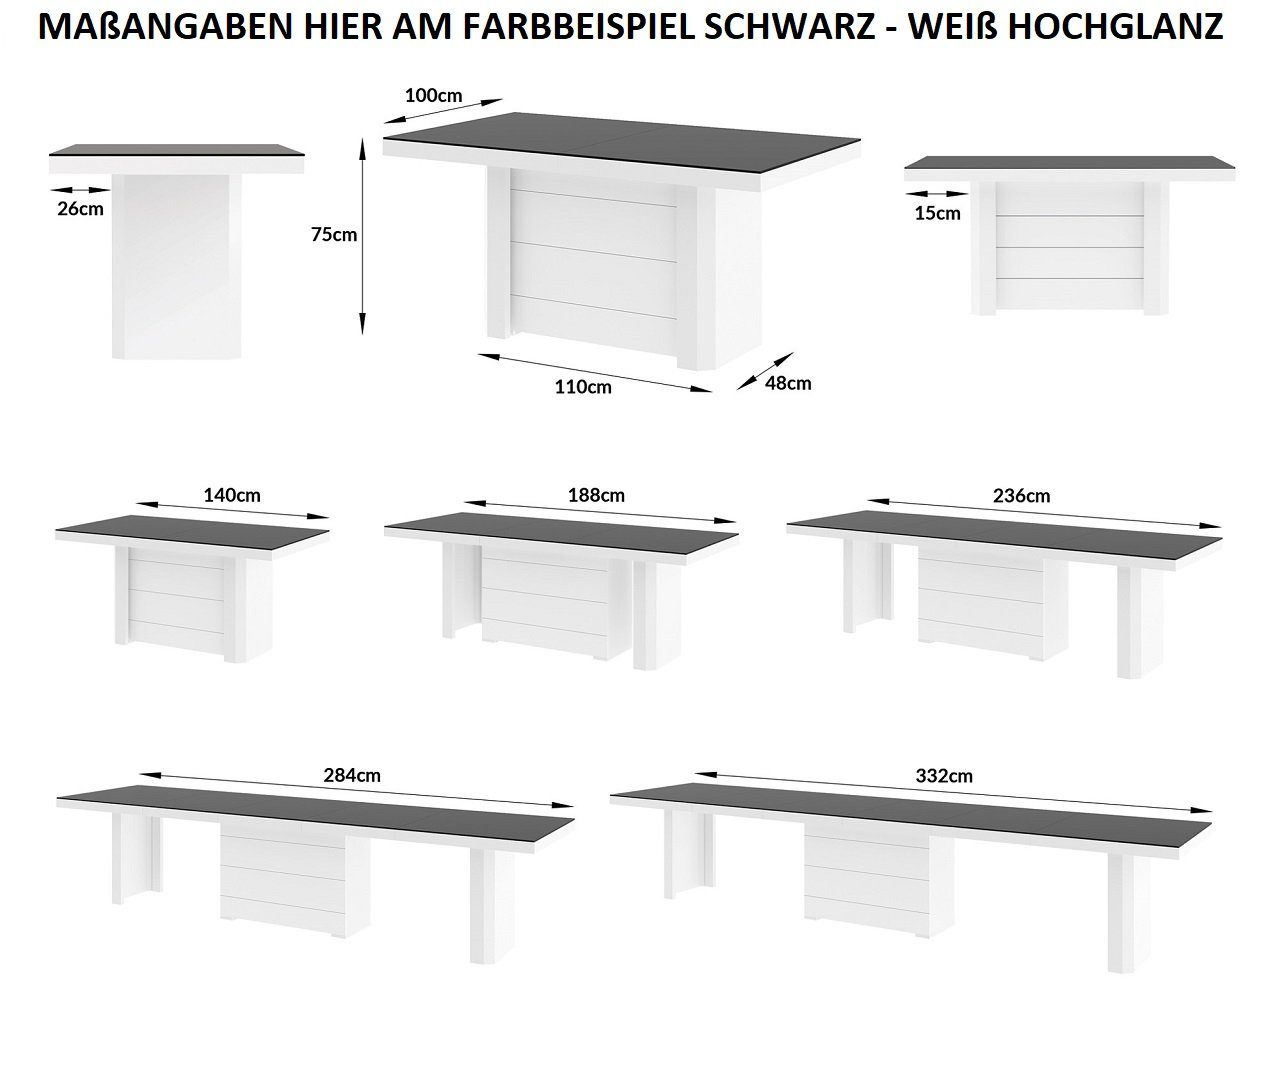 HE-777 designimpex Hochglanz Esstisch Design Tisch ausziehbar / Grau Weiß Grau bis Hochglanz / Weiß Hochglanz 140 332 XXL